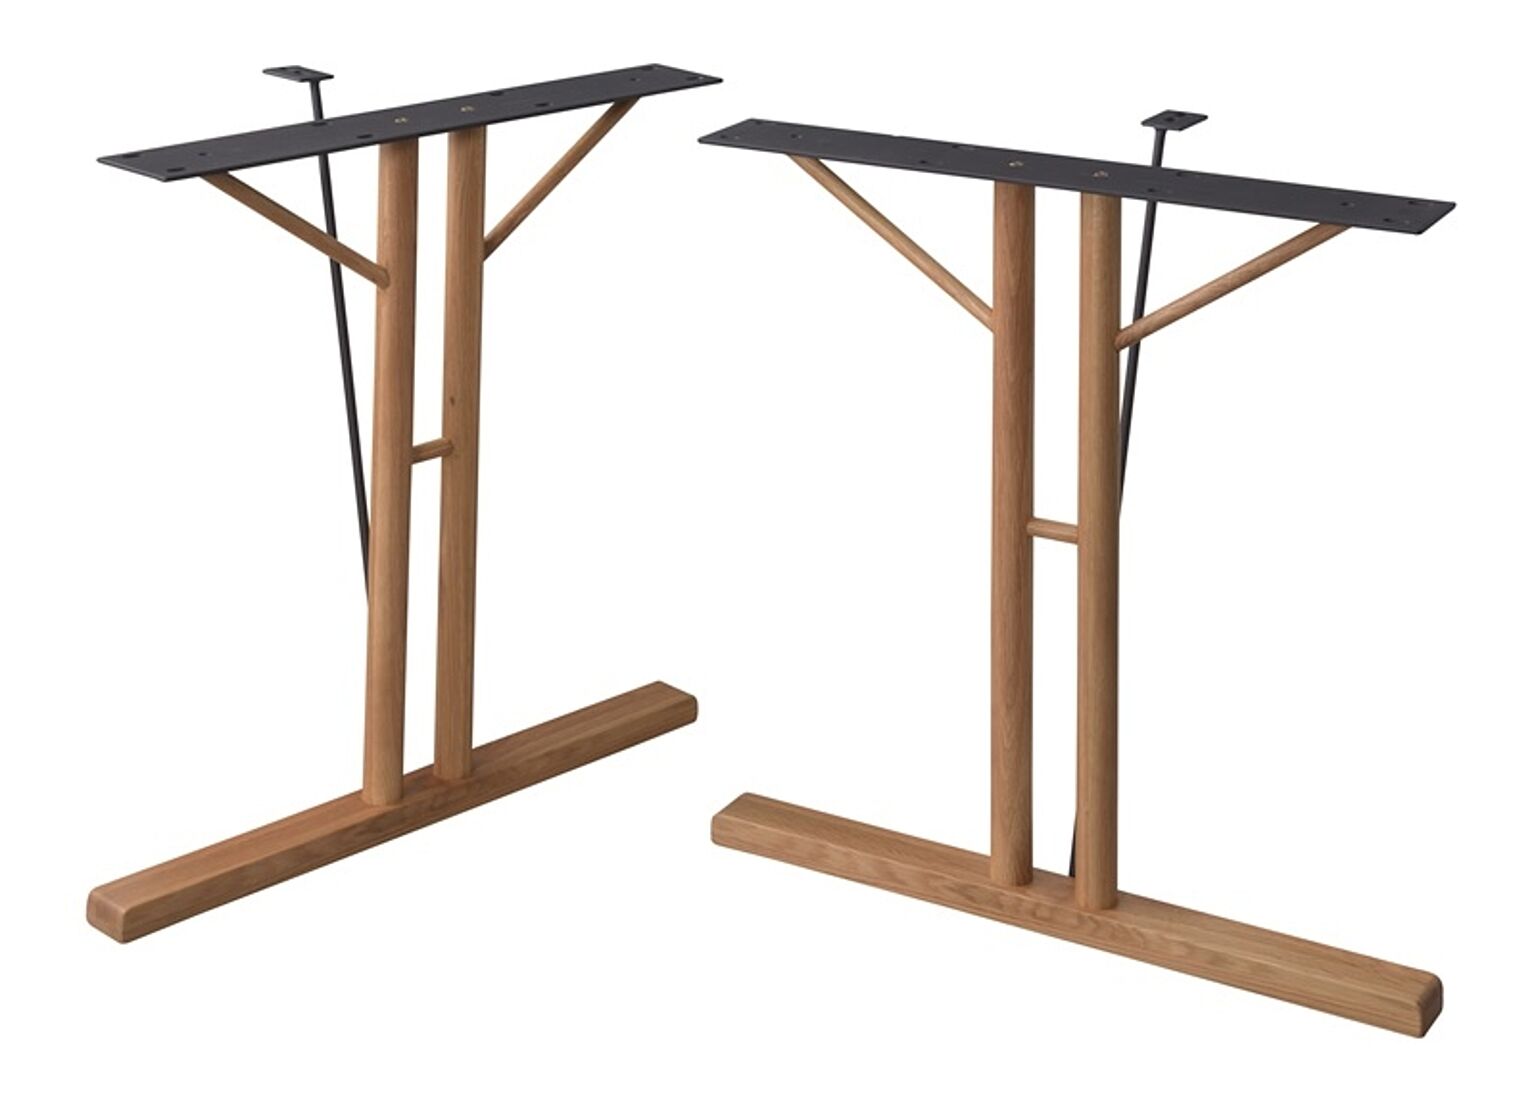 ダイニングテーブル 脚(2脚組) W66×D31.5×H68 ナチュラル 脚 テーブル ダイニングテーブル パーツ 組み合わせ 脚のみ 木製脚 天然木 T型 スチール 高さ68cm ナチュラル 